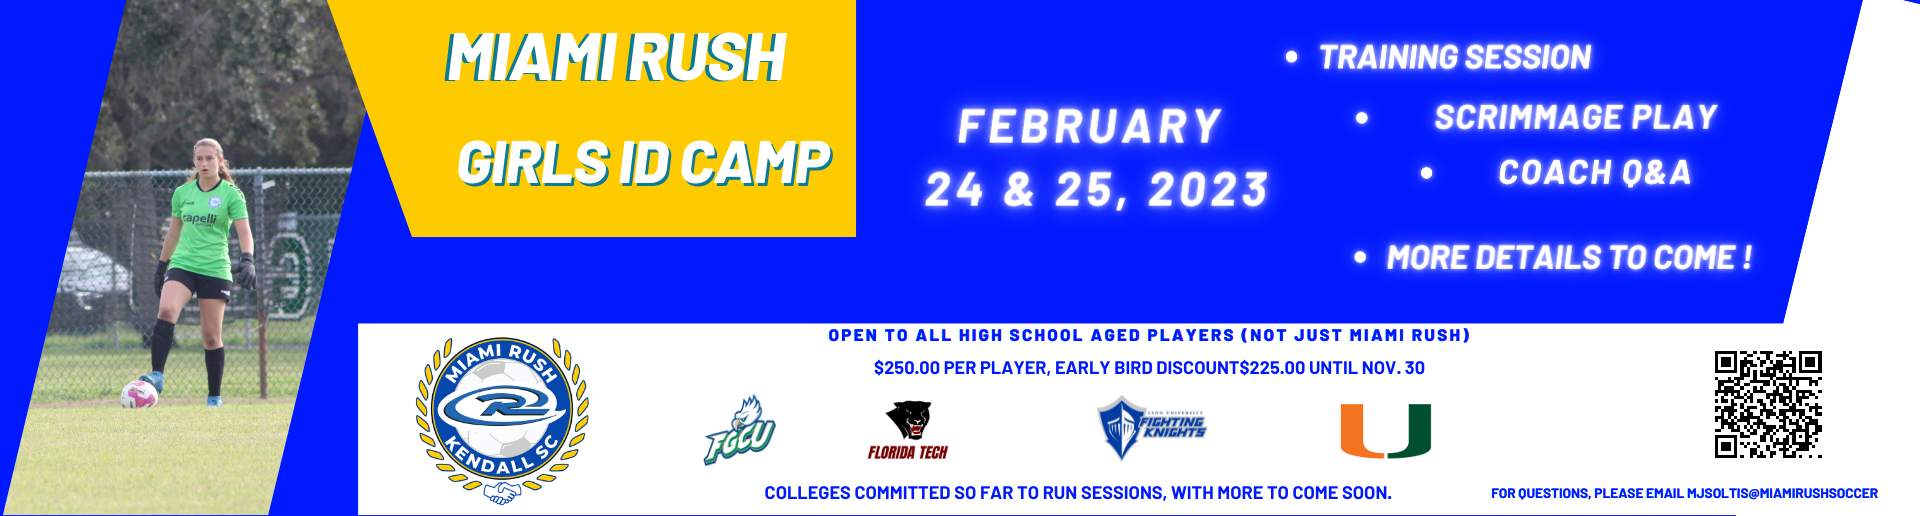 Miami Rush 2023 College ID Camp